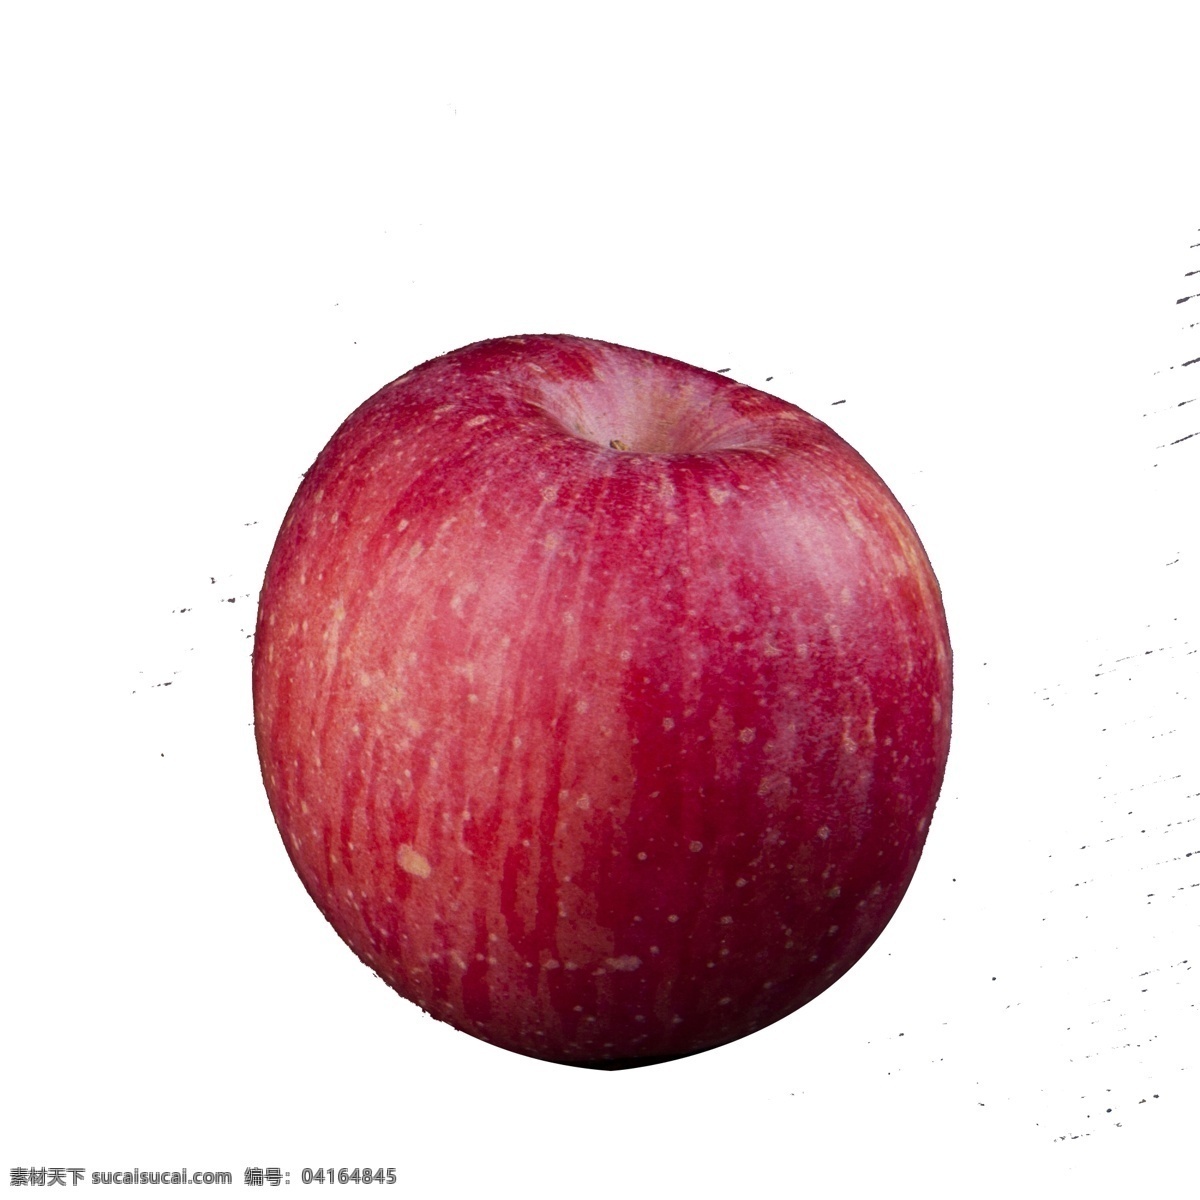 红通通 苹果 免 抠 图 新鲜水果 植物 新鲜的苹果 红红的苹果 美味的苹果 红色的苹果 免抠图